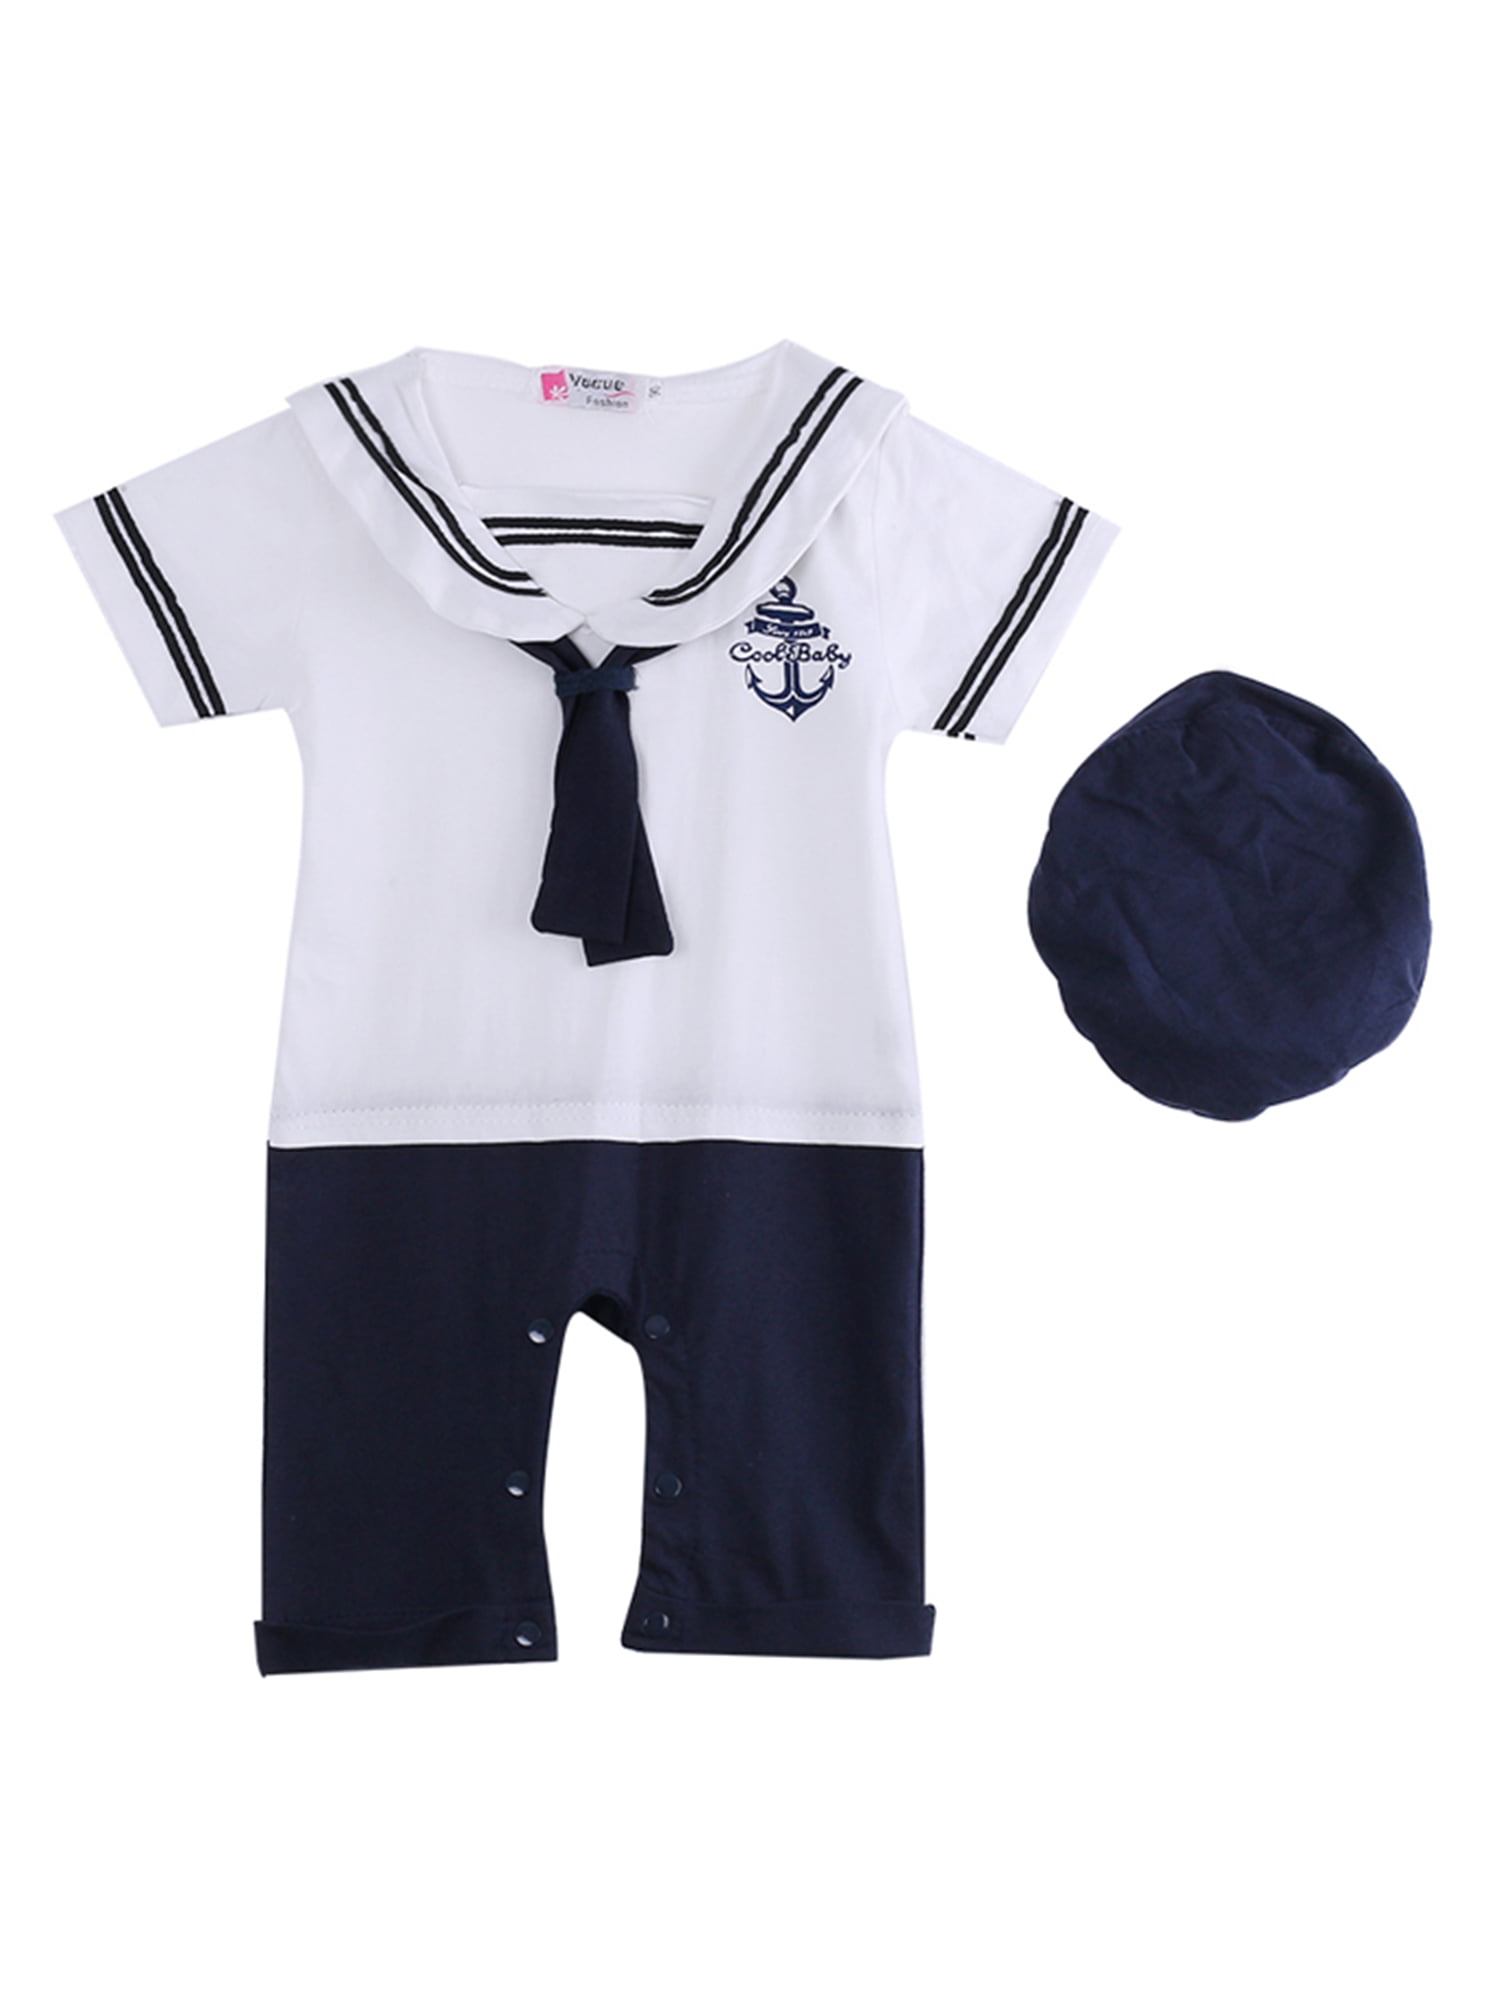 Kids Girl Girl Baby Navy Sailor marine Stripe Costume Party Romper Dress 6-24mth 